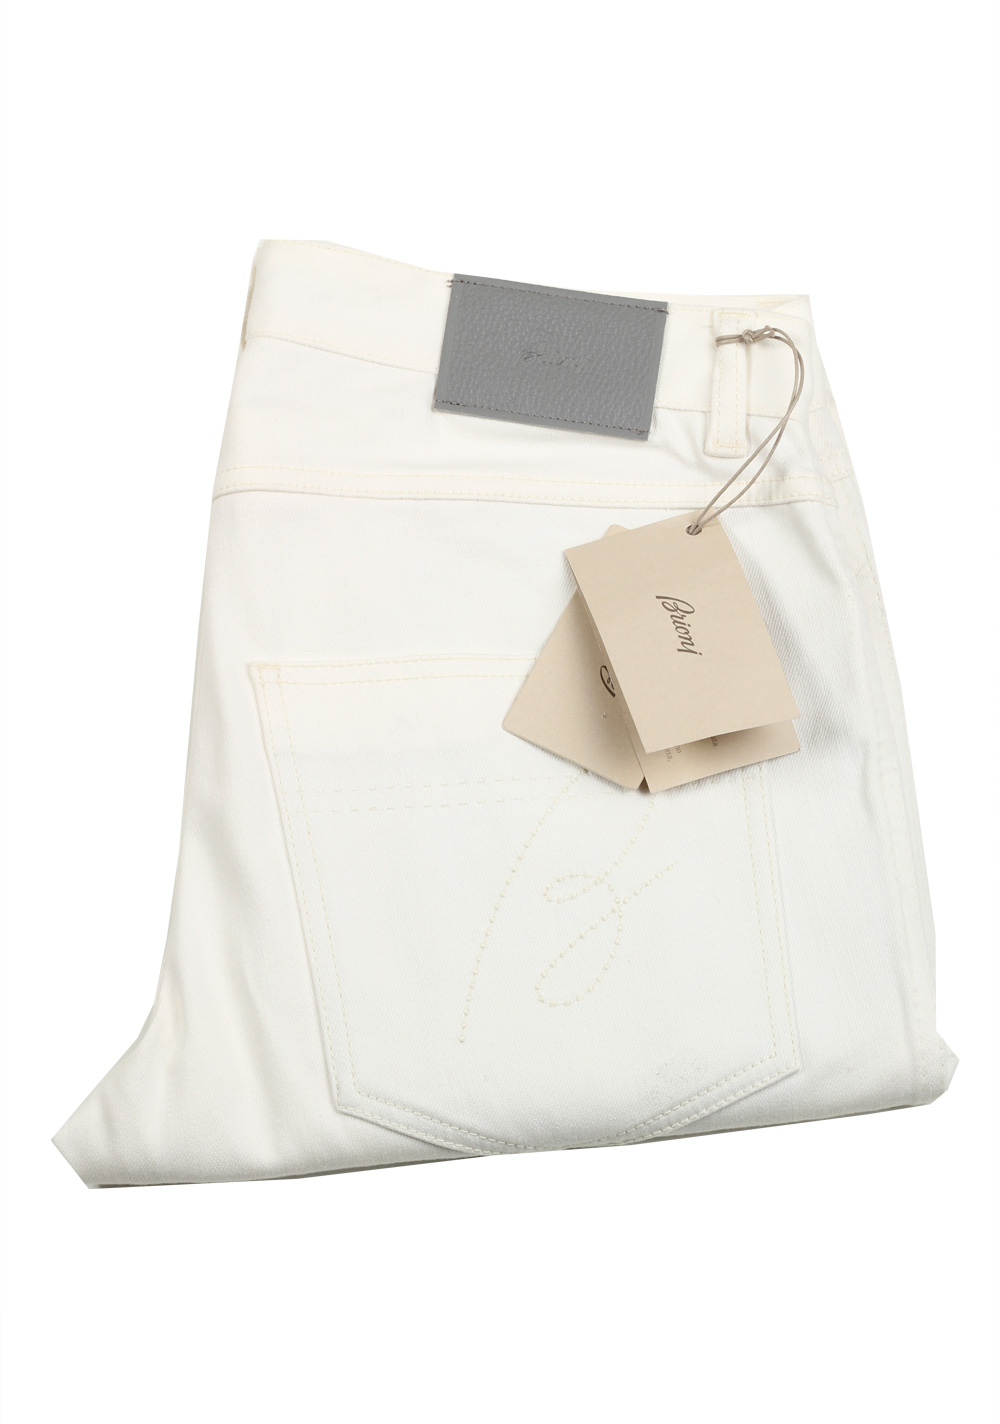 Brioni White Jeans SPL70L Trousers Size 51 / 35 U.S. | Costume Limité